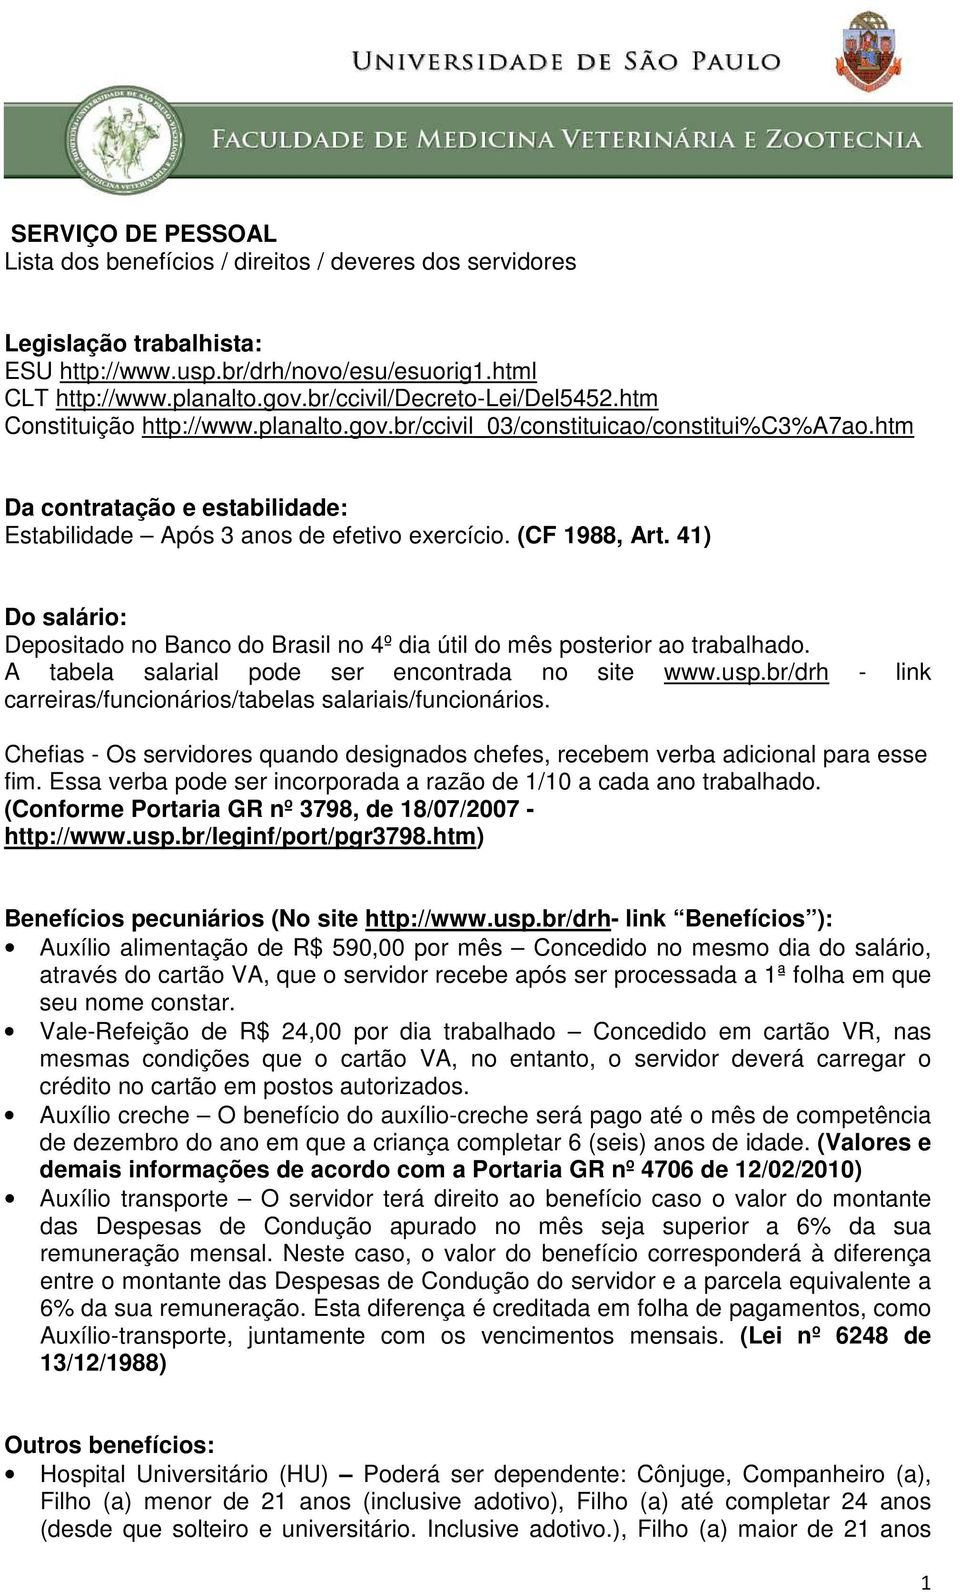 (CF 1988, Art. 41) Do salário: Depositado no Banco do Brasil no 4º dia útil do mês posterior ao trabalhado. A tabela salarial pode ser encontrada no site www.usp.